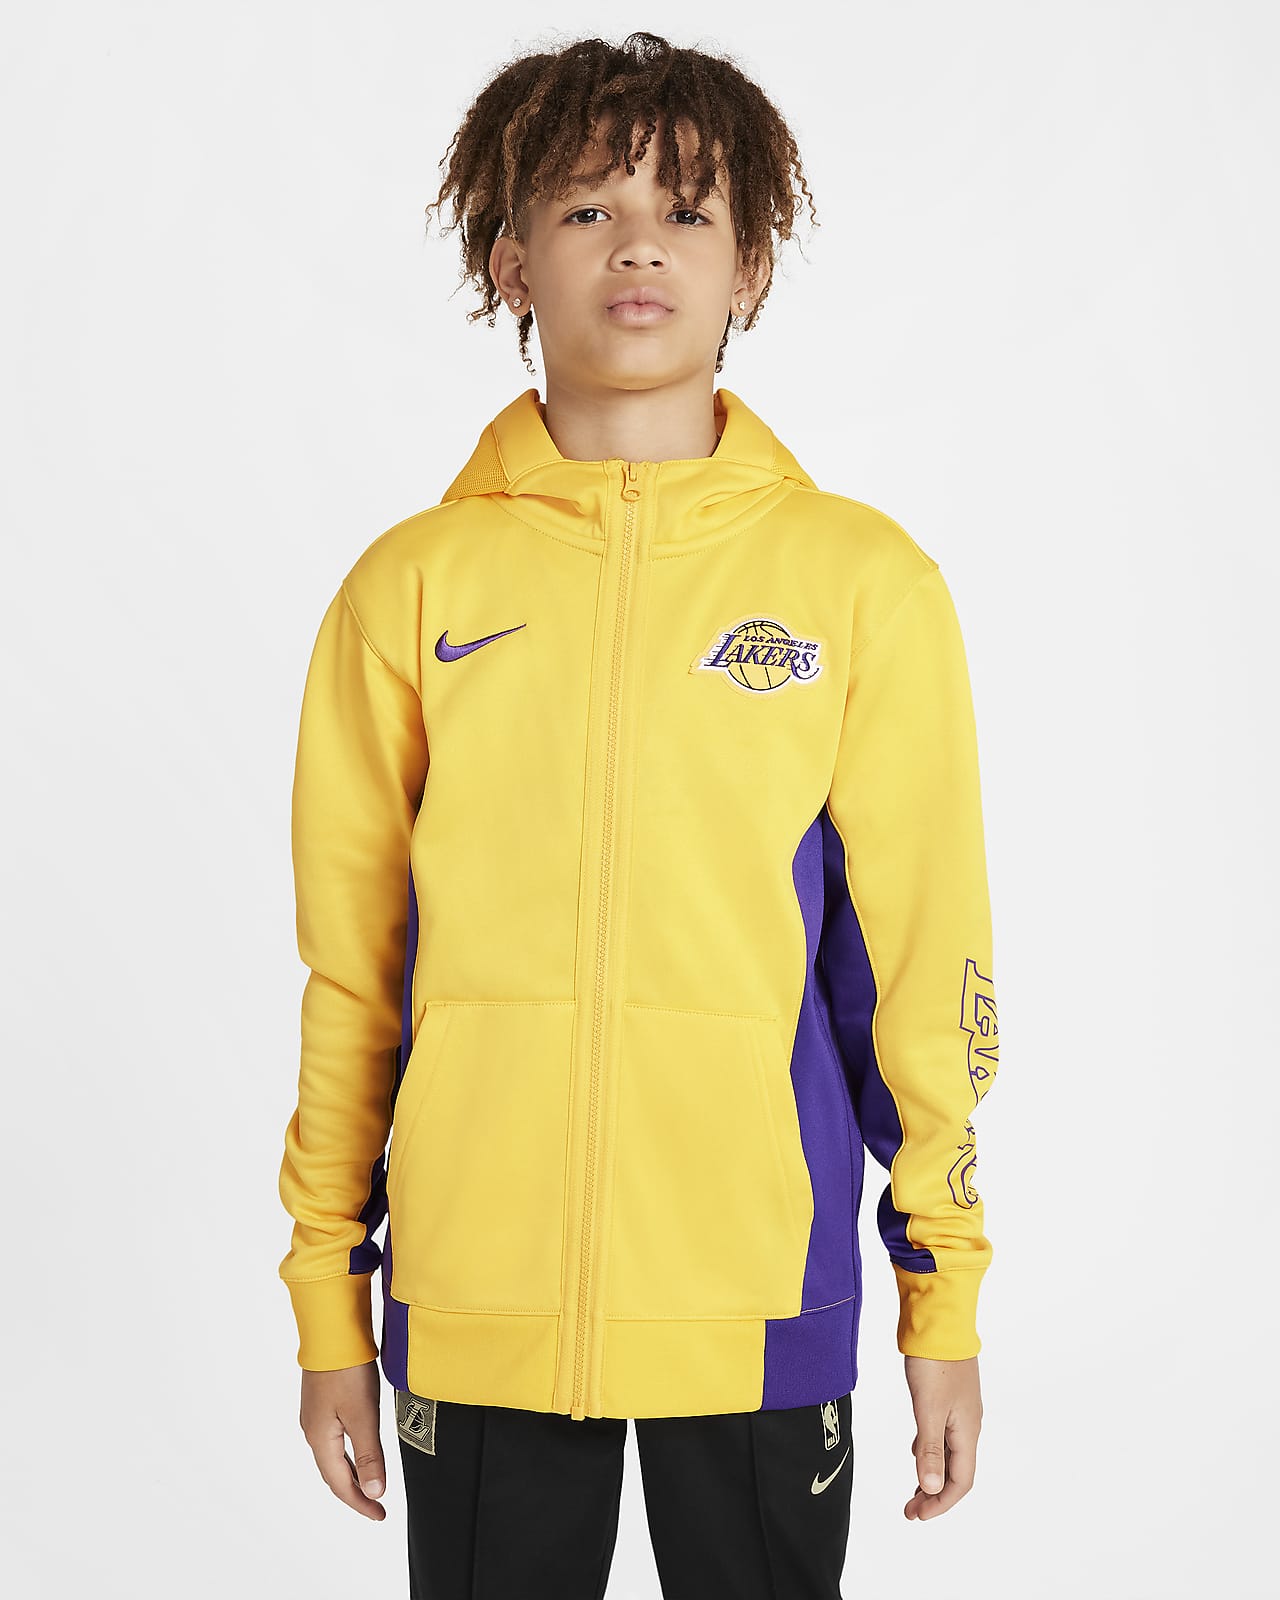 Los Angeles Lakers Showtime Dessuadora amb caputxa i cremallera completa Nike Dri-FIT NBA - Nen/a